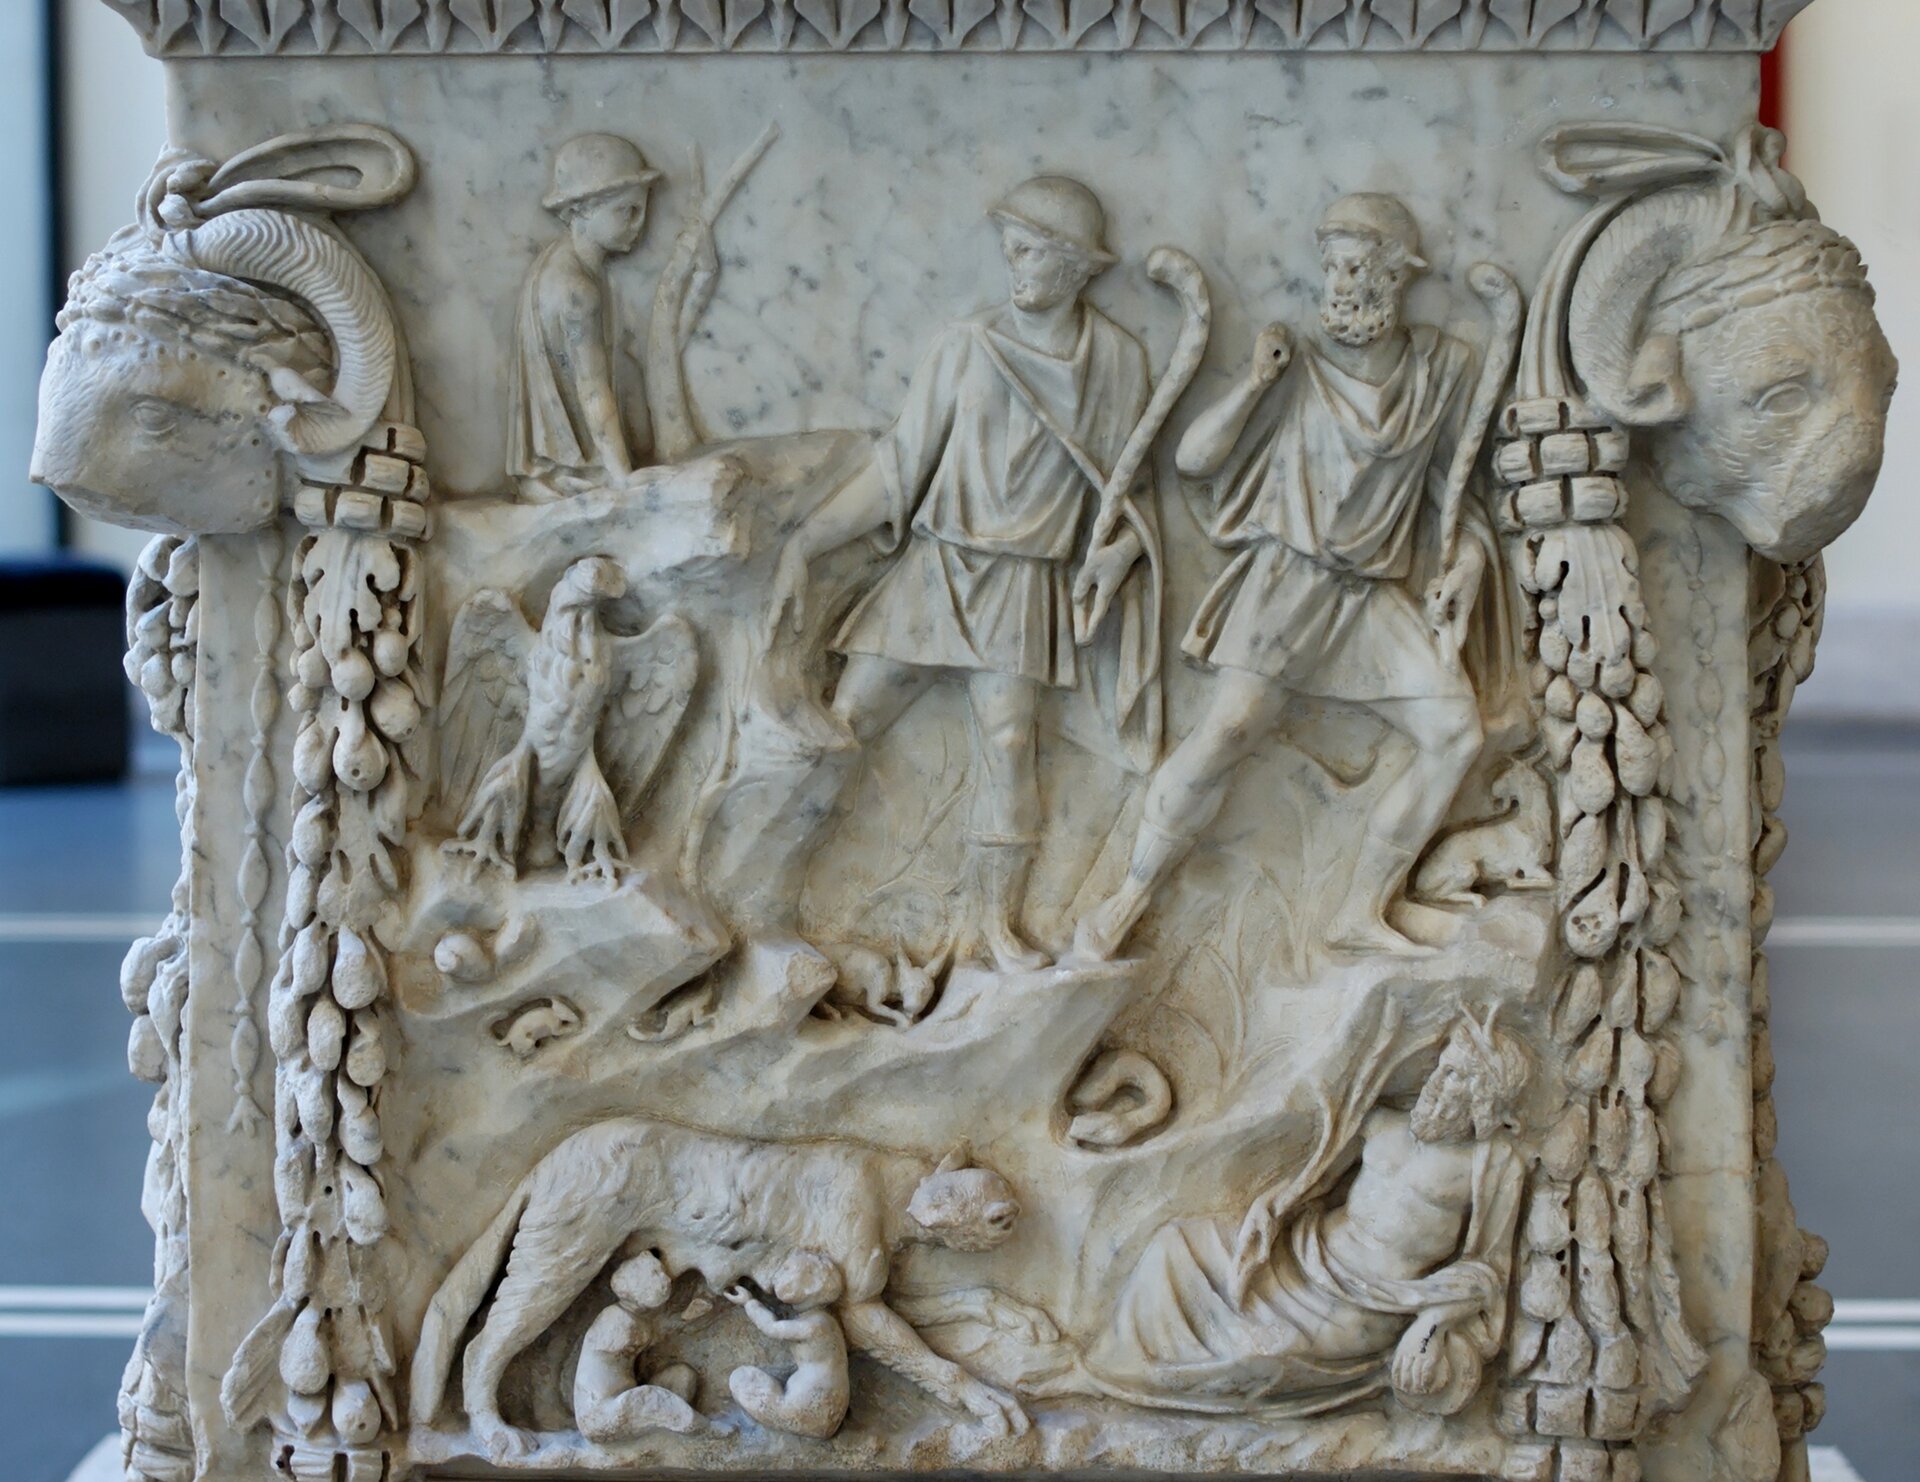 Ilustracja przedstawia relief obrazujący mit założenia Rzymu. Na reliefie widzimy Romulusa i Remusa karmionych przez wilczycę. Nad wilczycą pojawia się również dwóch mężczyzn w krótkich tunikach oraz po lewej stronie żołnierz z bronią. Pod żołnierzem znajduje się ptak z dużymi rozłożonymi skrzydłami. 